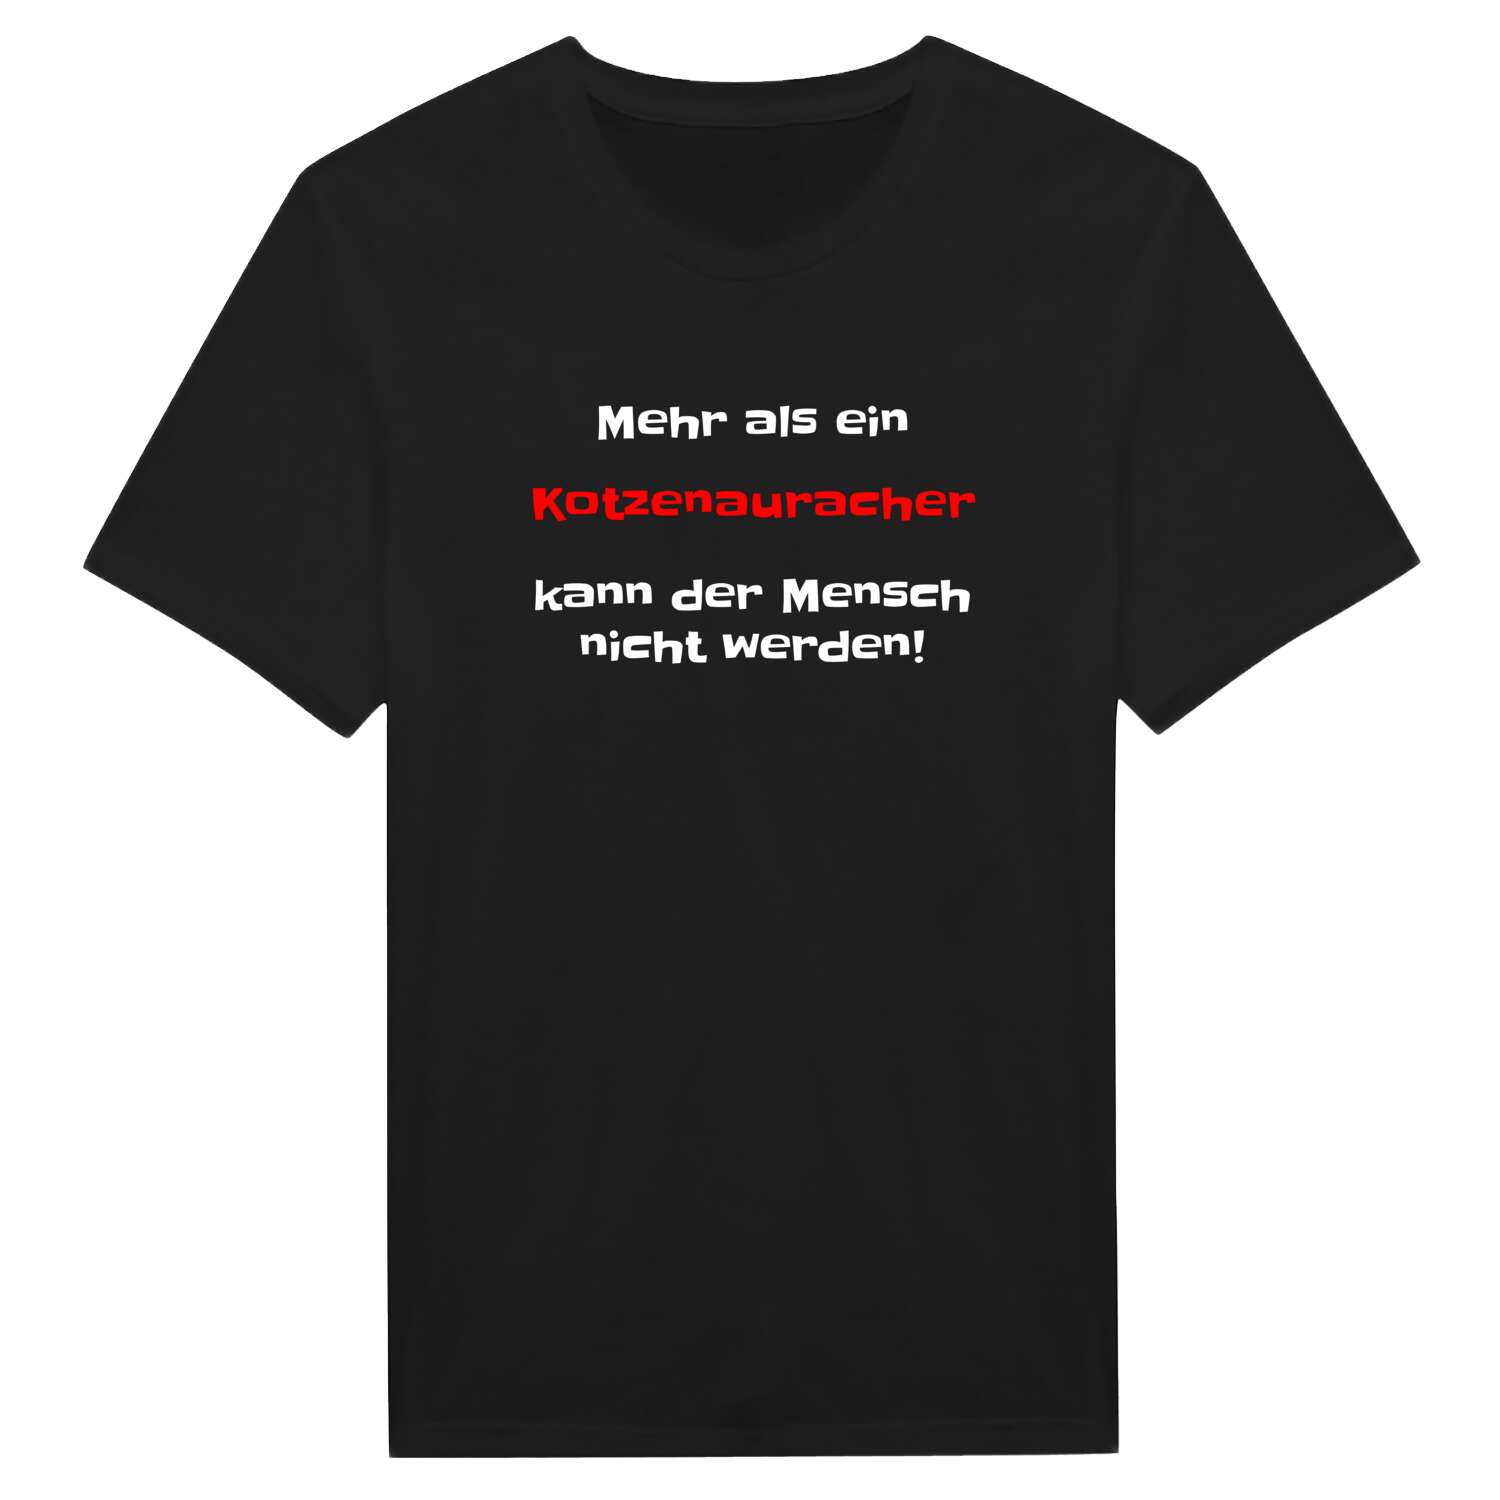 Kotzenaurach T-Shirt »Mehr als ein«